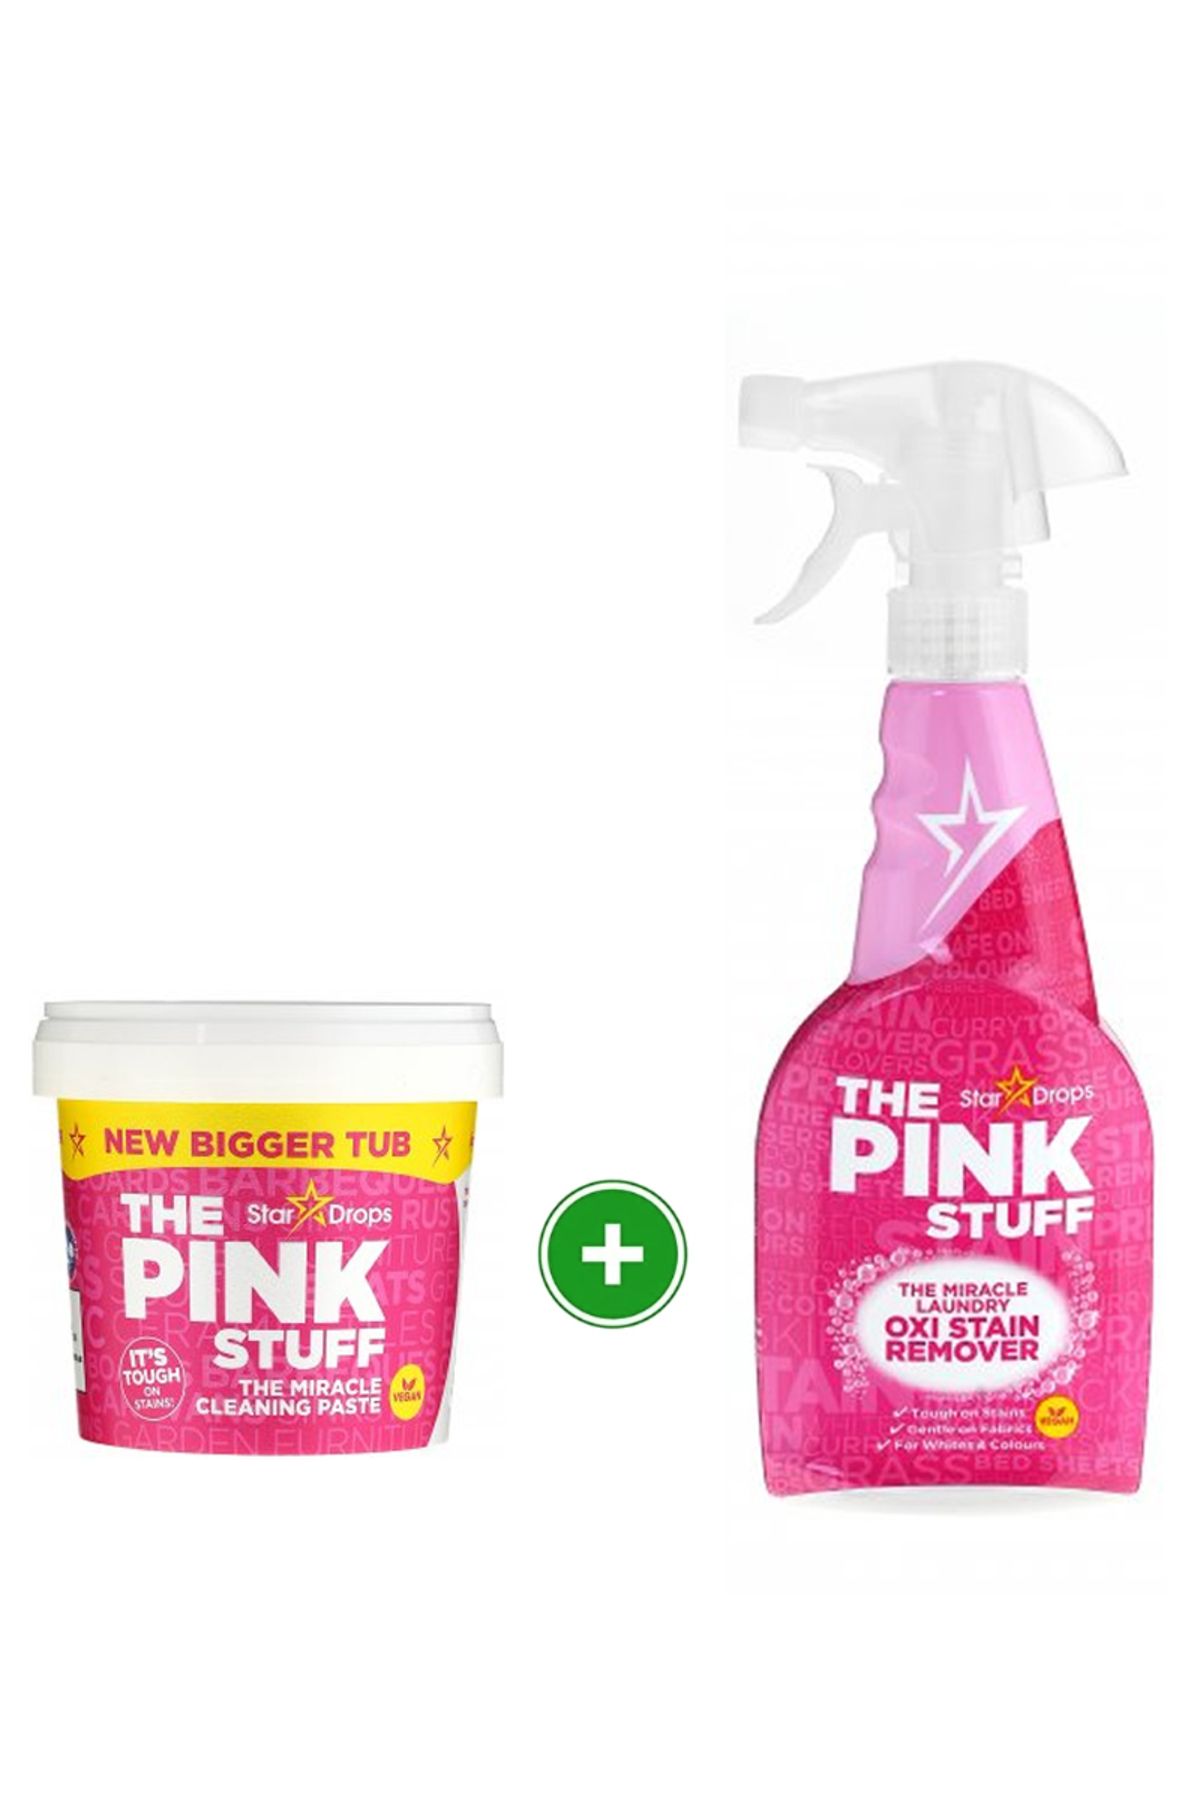 ThePinkStuff The Pink Stuff Temizlik Macunu 850 gr The Pink Stuff Oxi Leke Çıkarıcı Sprey 500 ml